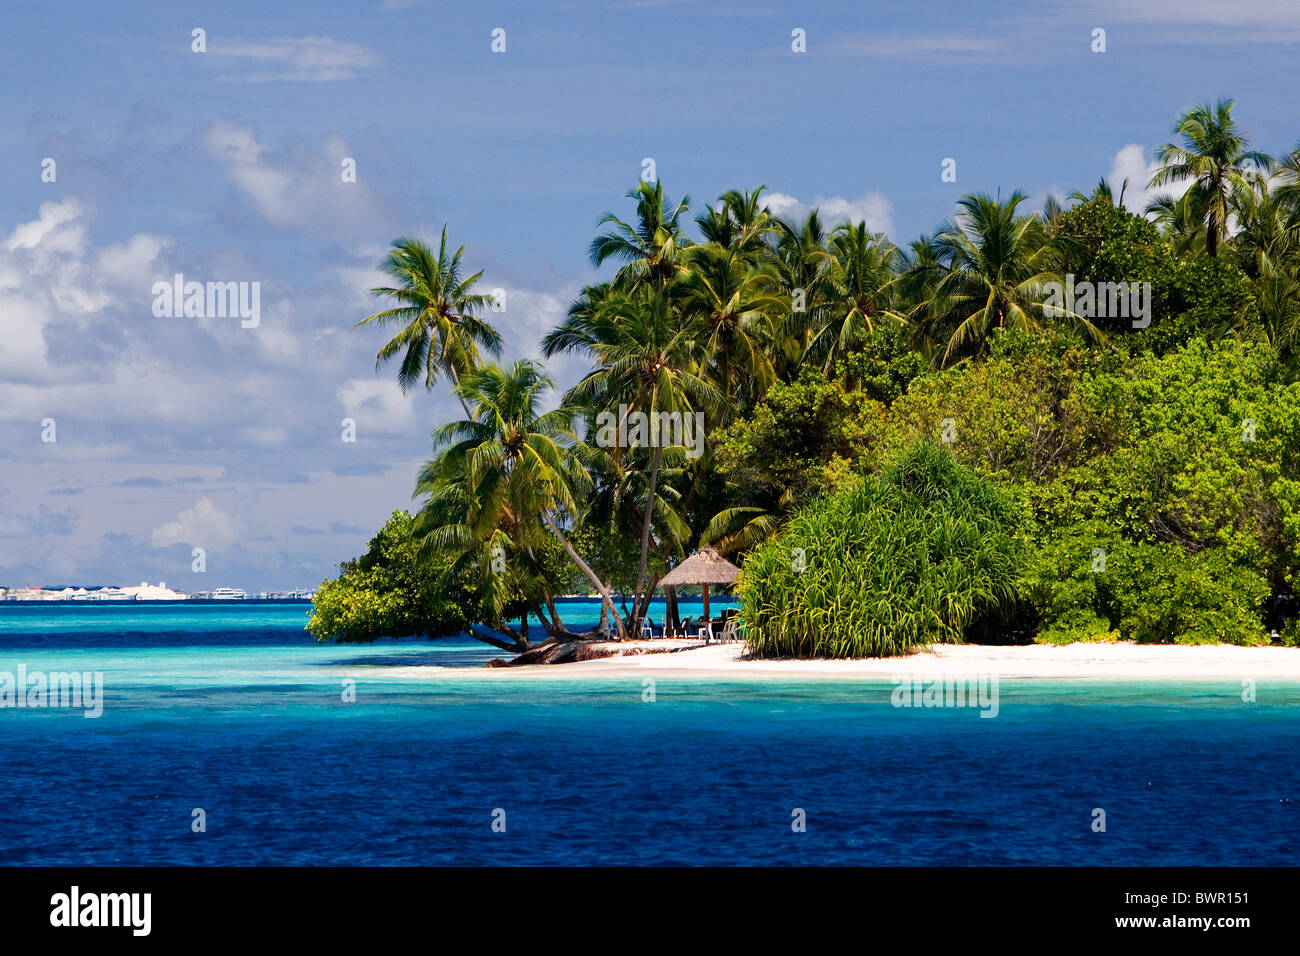 Maldives Asia North Male Atoll coast sea Indian ocean landscape island ...